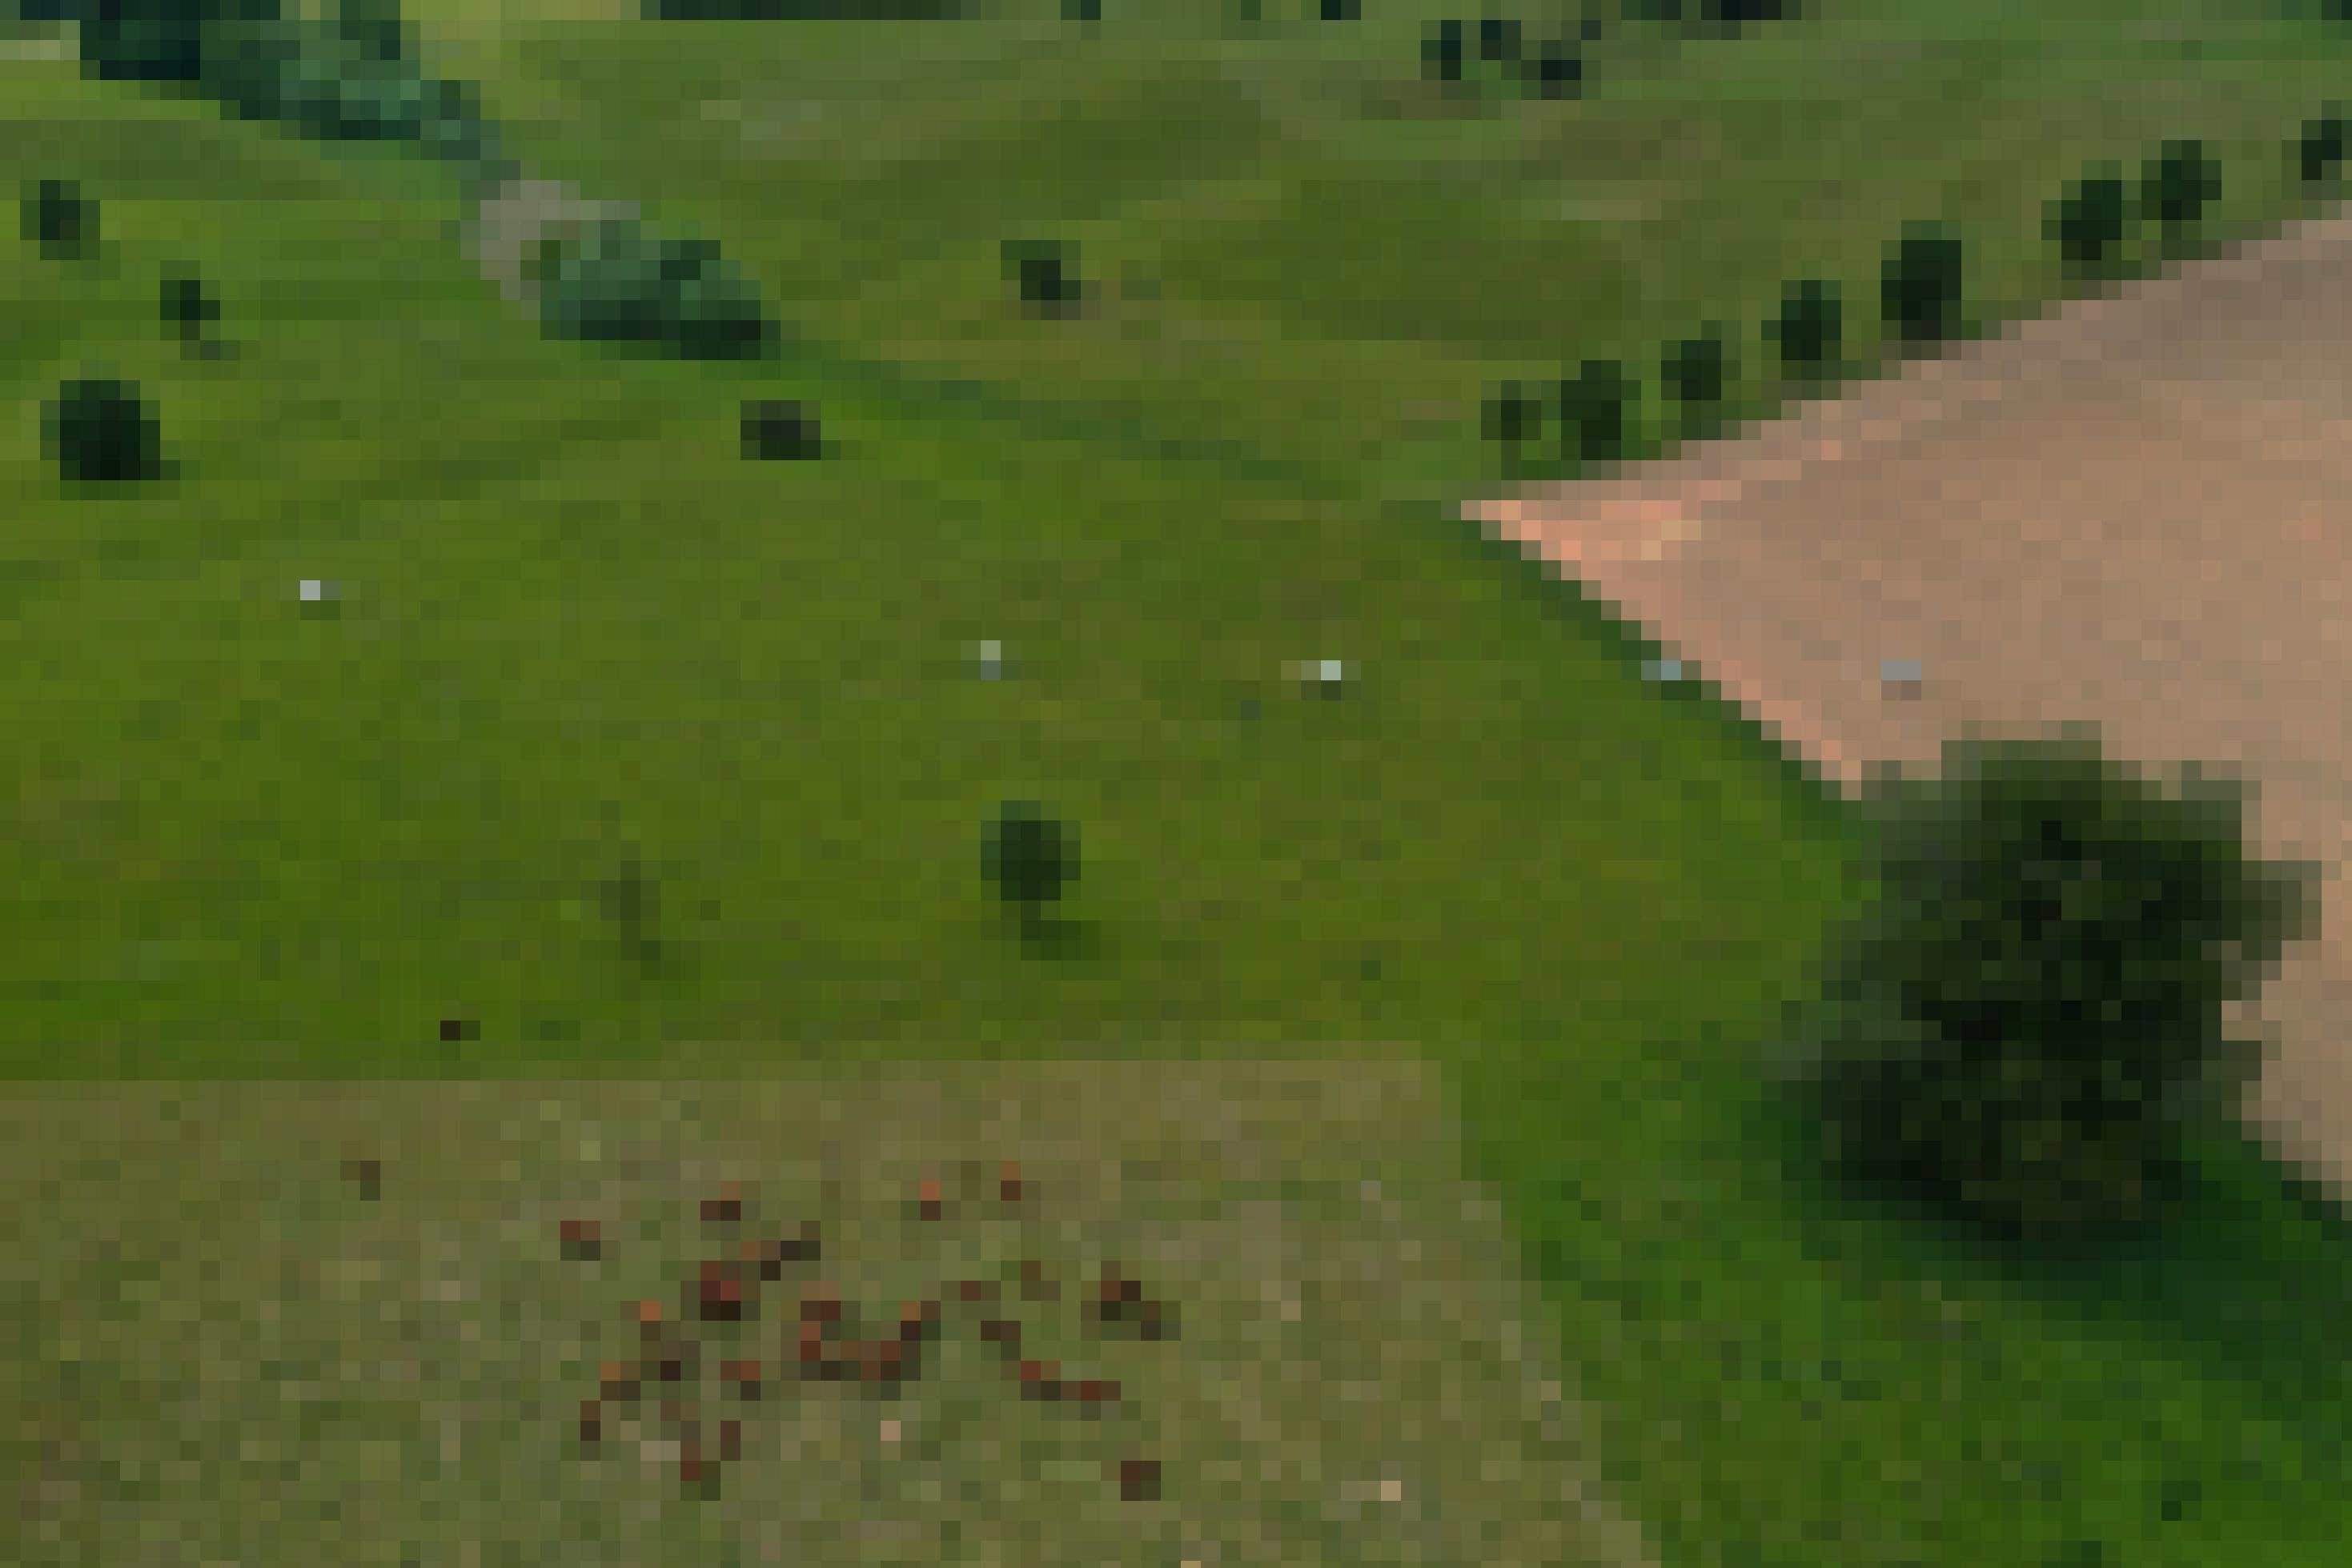 Luftbild einer Landschaft mit Weide links und Acker rechts, kleine weiße Punkte sind zu sehen, das sind die Zeltfallen der Insektenforscher.